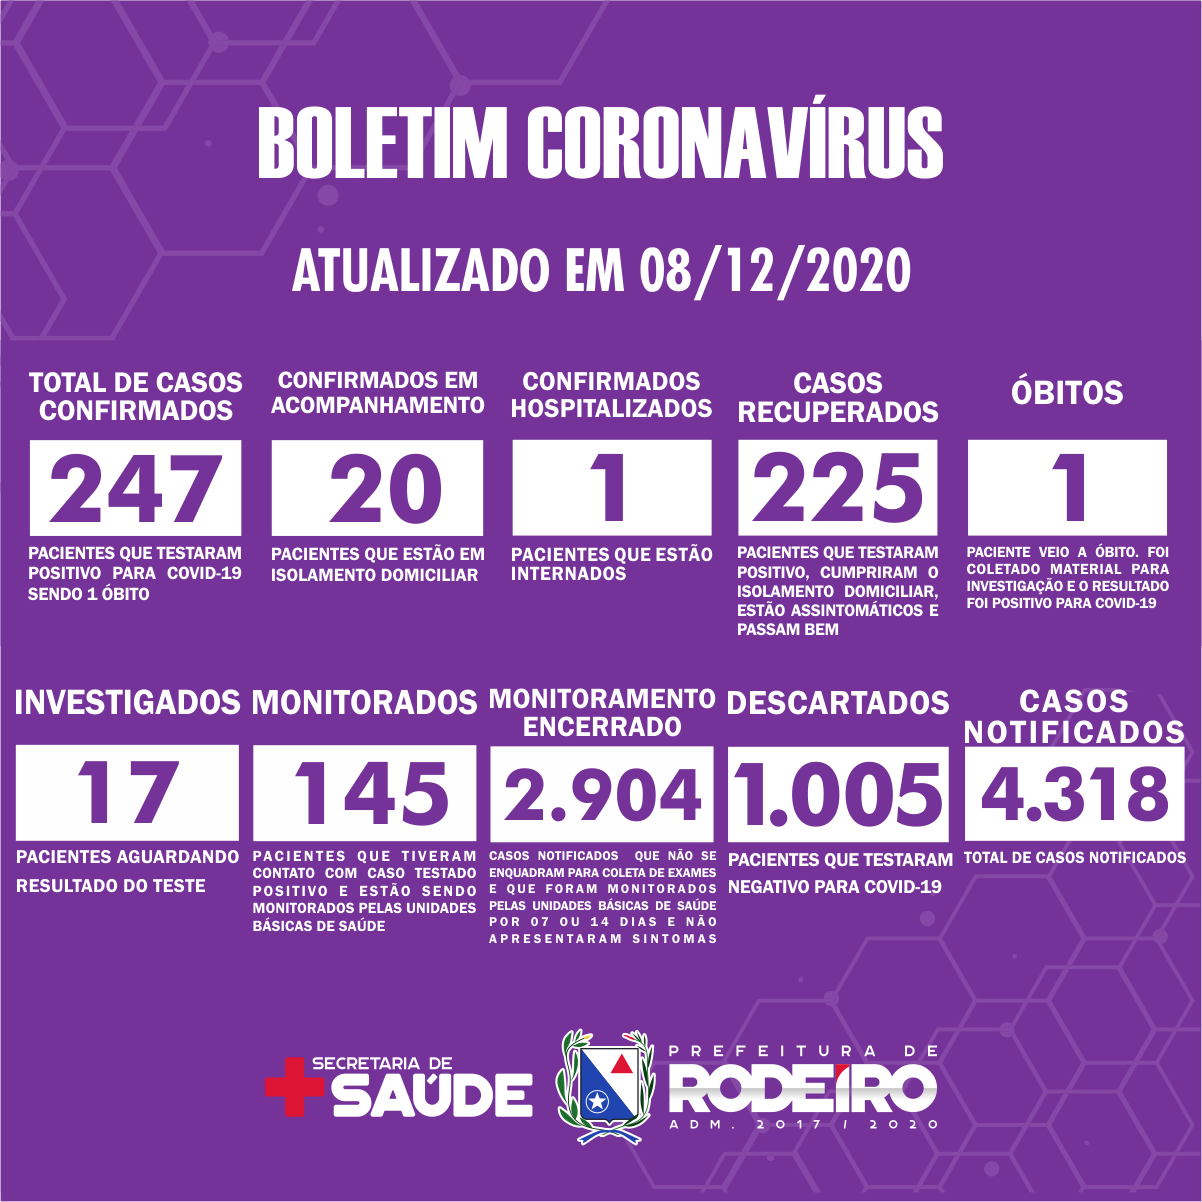 Boletim Epidemiológico do Município de Rodeiro sobre coronavírus, atualizado em 08/12/2020